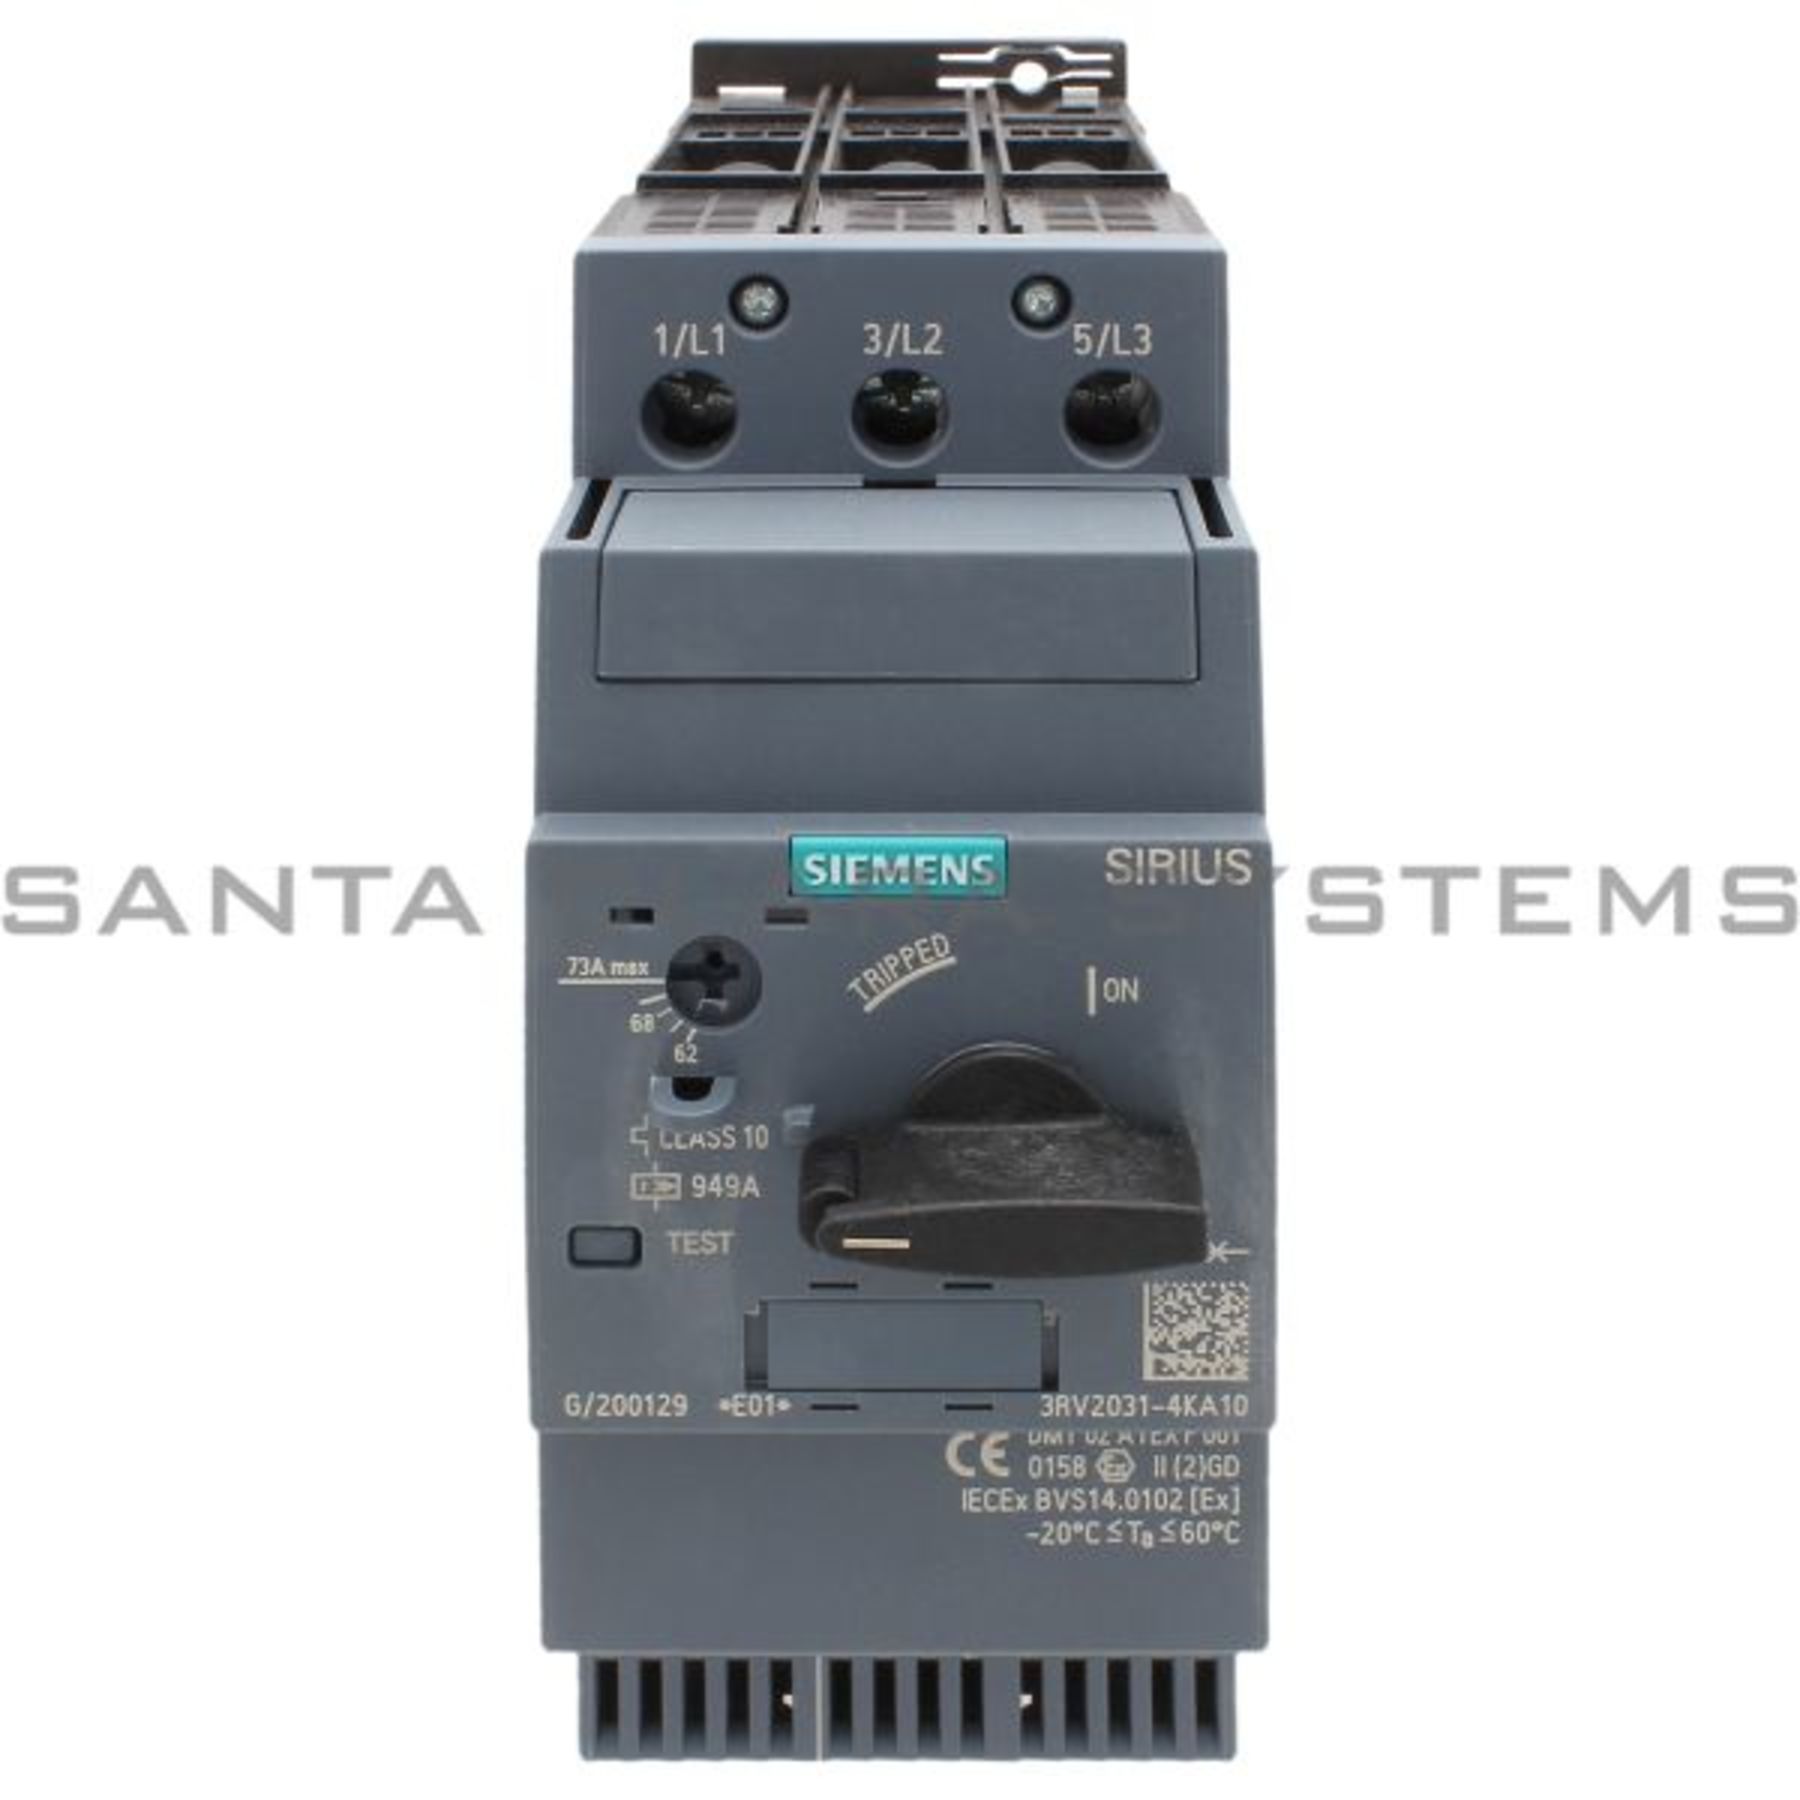 3RV2031-4KA10 Siemens In stock and ready to ship - Santa Clara Systems